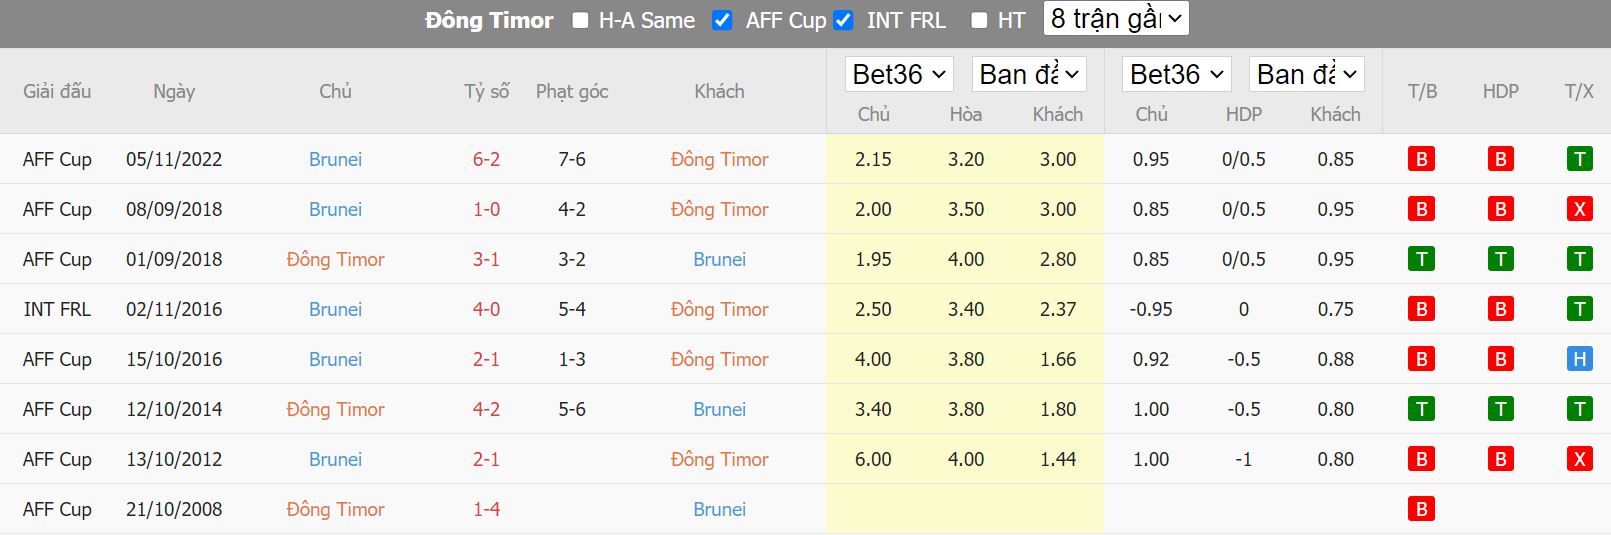 Thành tích đối đầu giữa 2 đội bóng Timor Leste vs Brunei - AFF Cup gần đây